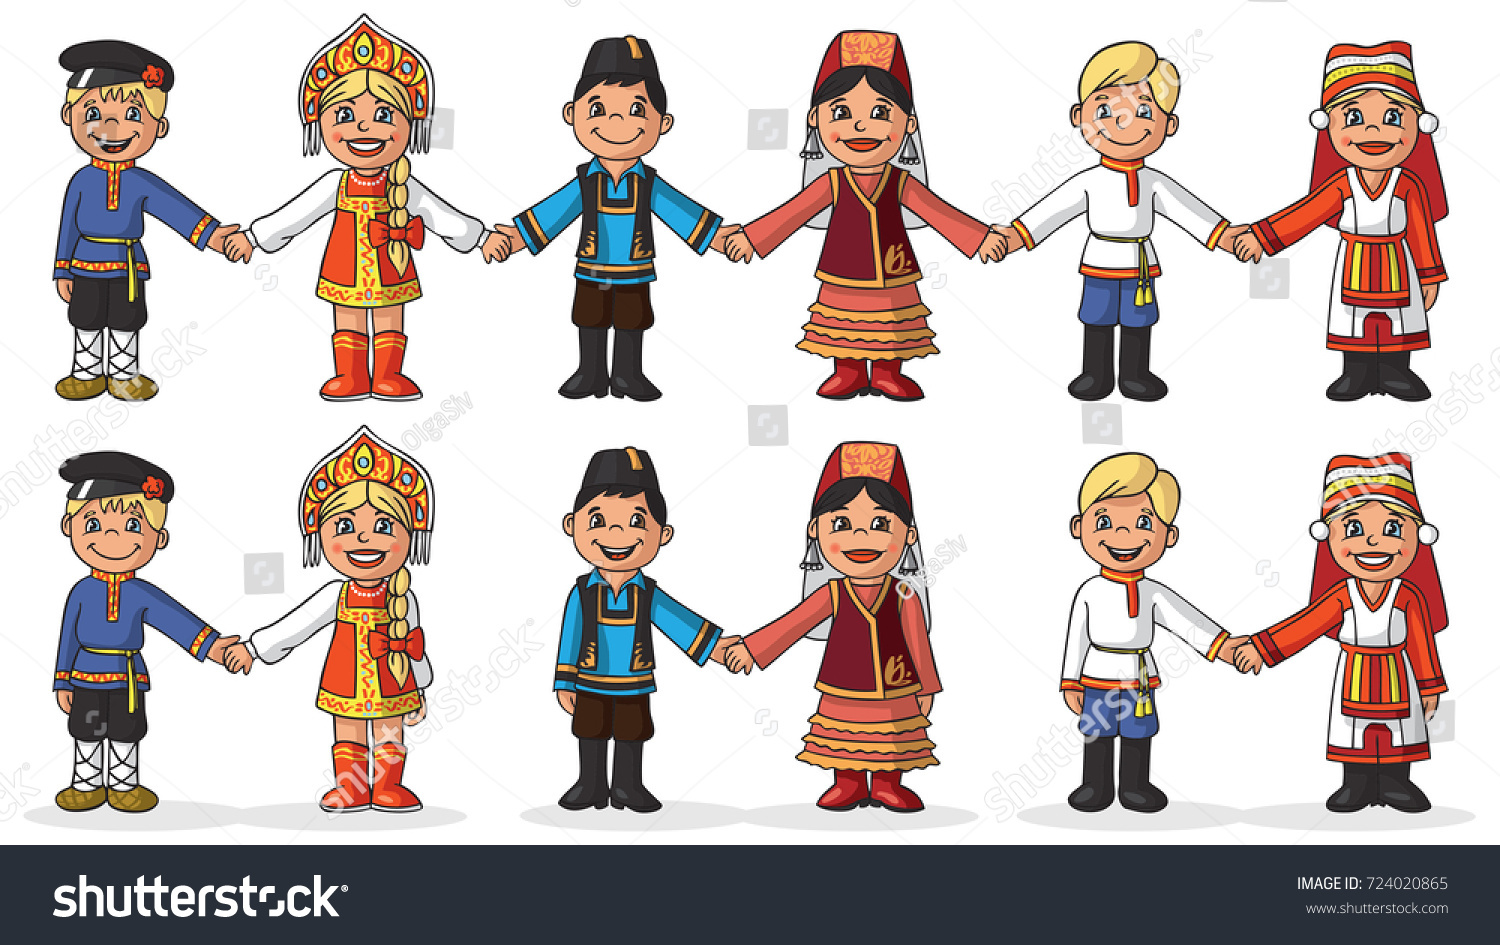 Иллюстрации дети в национальных костюмах